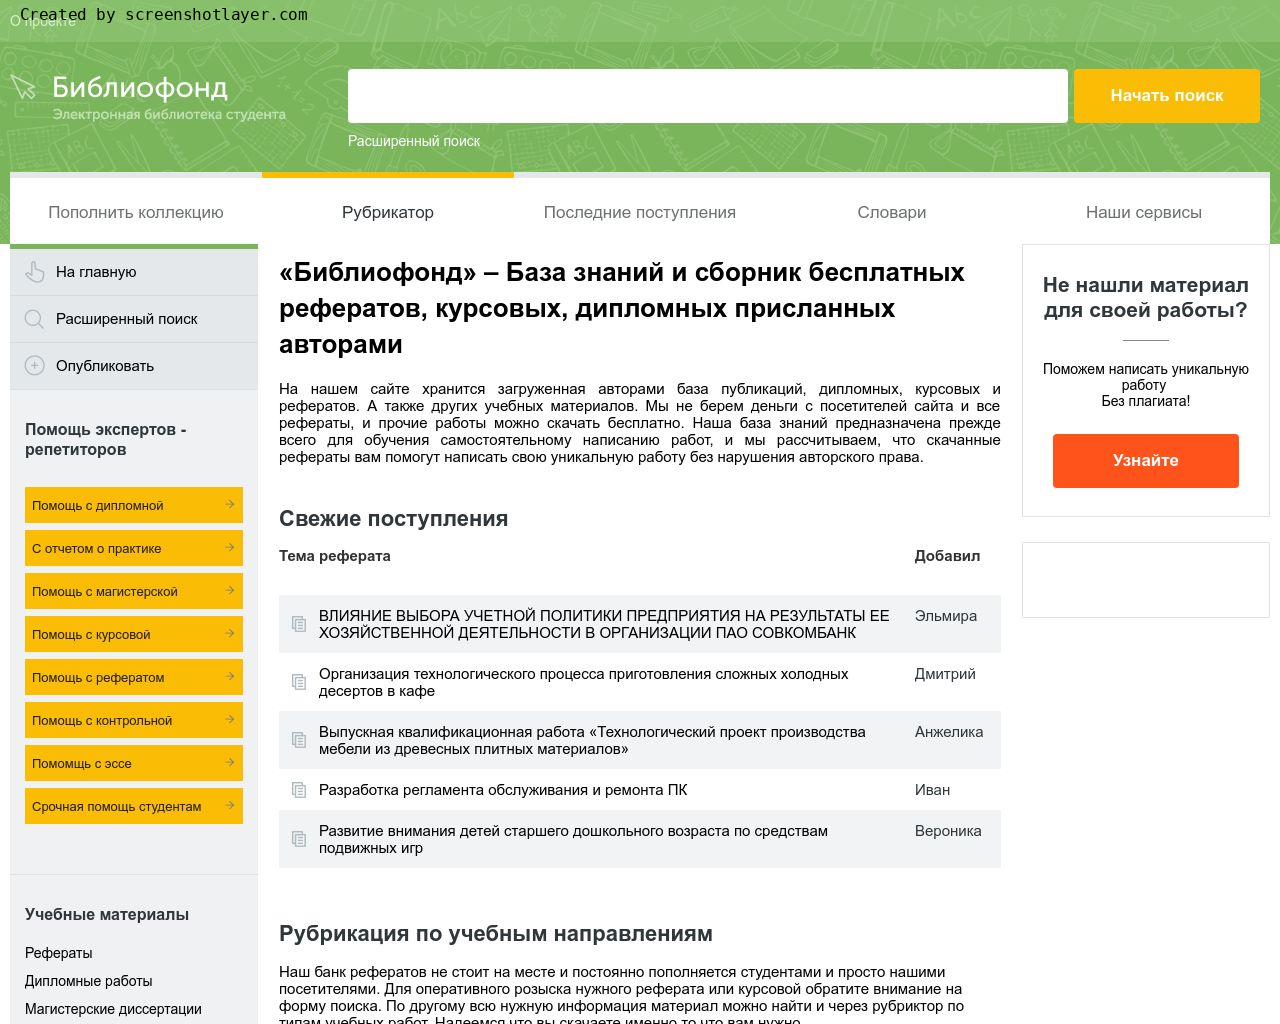 Изображение сайта bibliofond.ru в разрешении 1280x1024